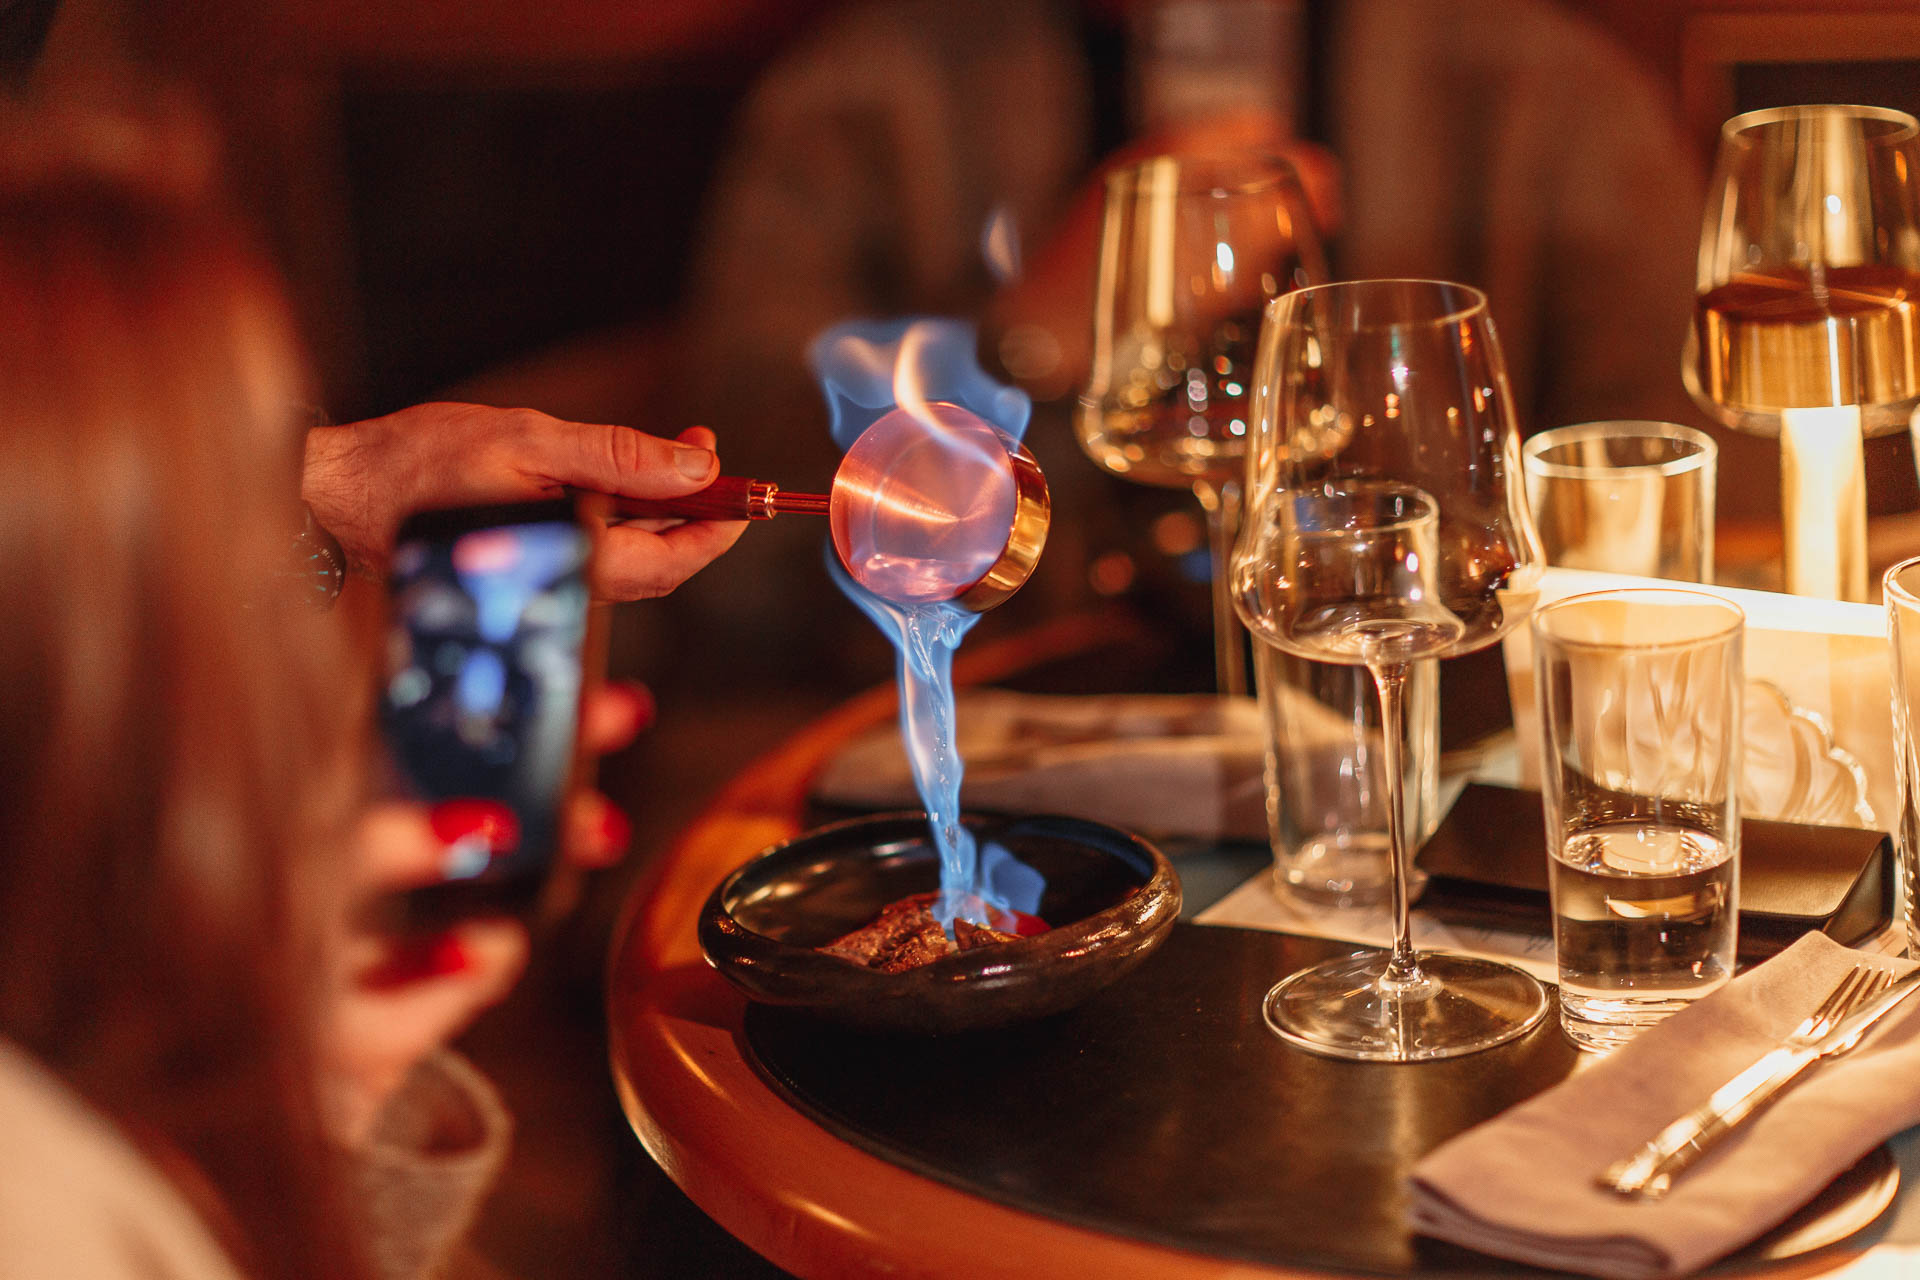 голубое пламя на кулинарном блюде в уютной обстановке с бокалами для вина и теплым рассеянным освещением